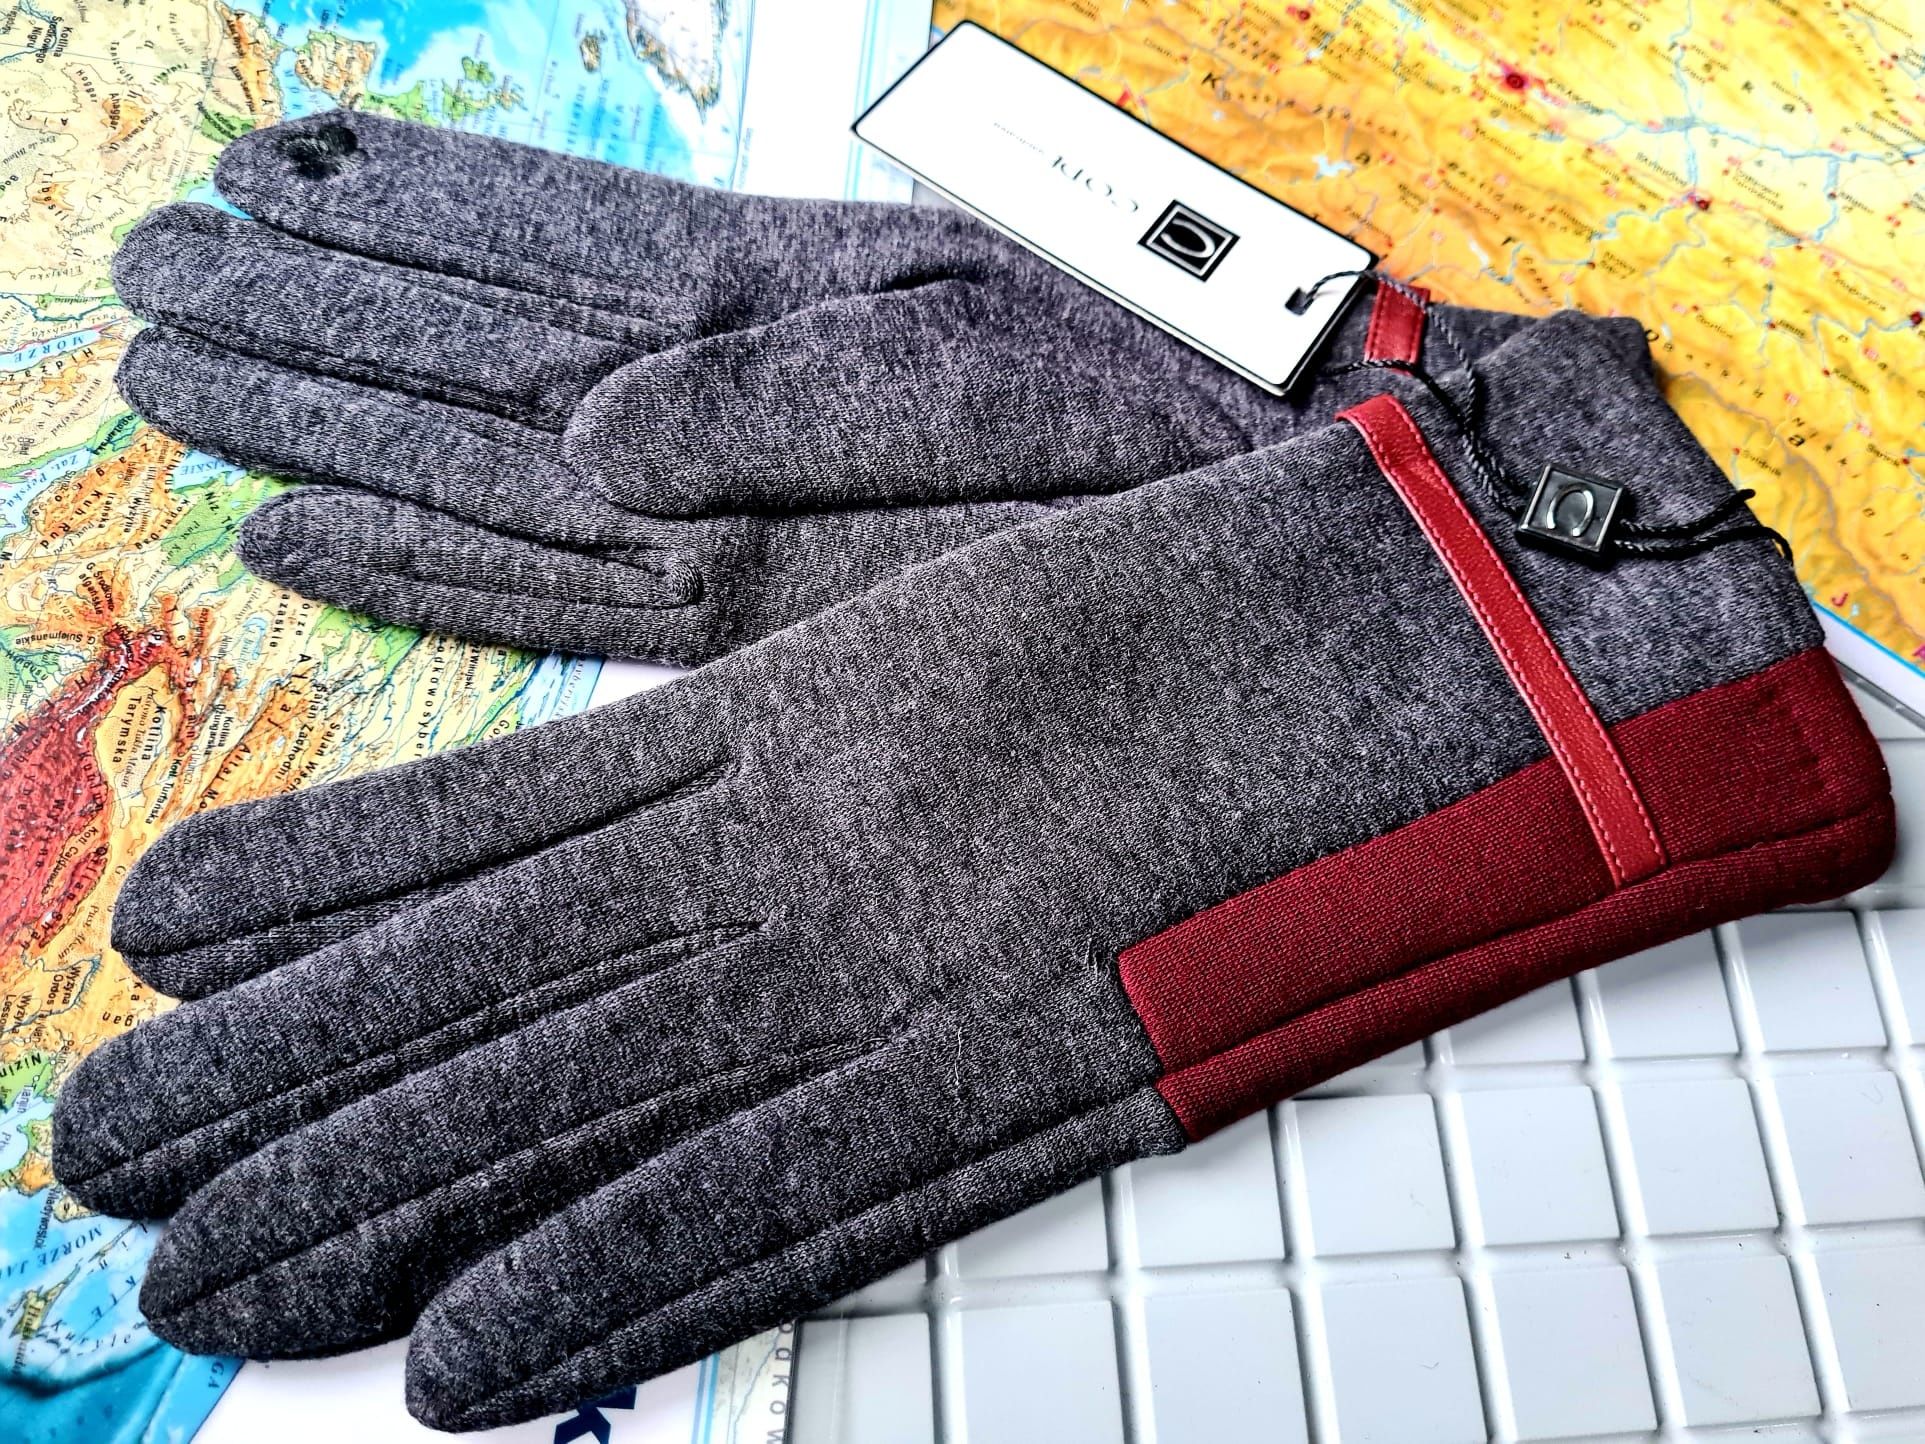 Nowe rękawiczki damskie zimowe marki Code szare modne